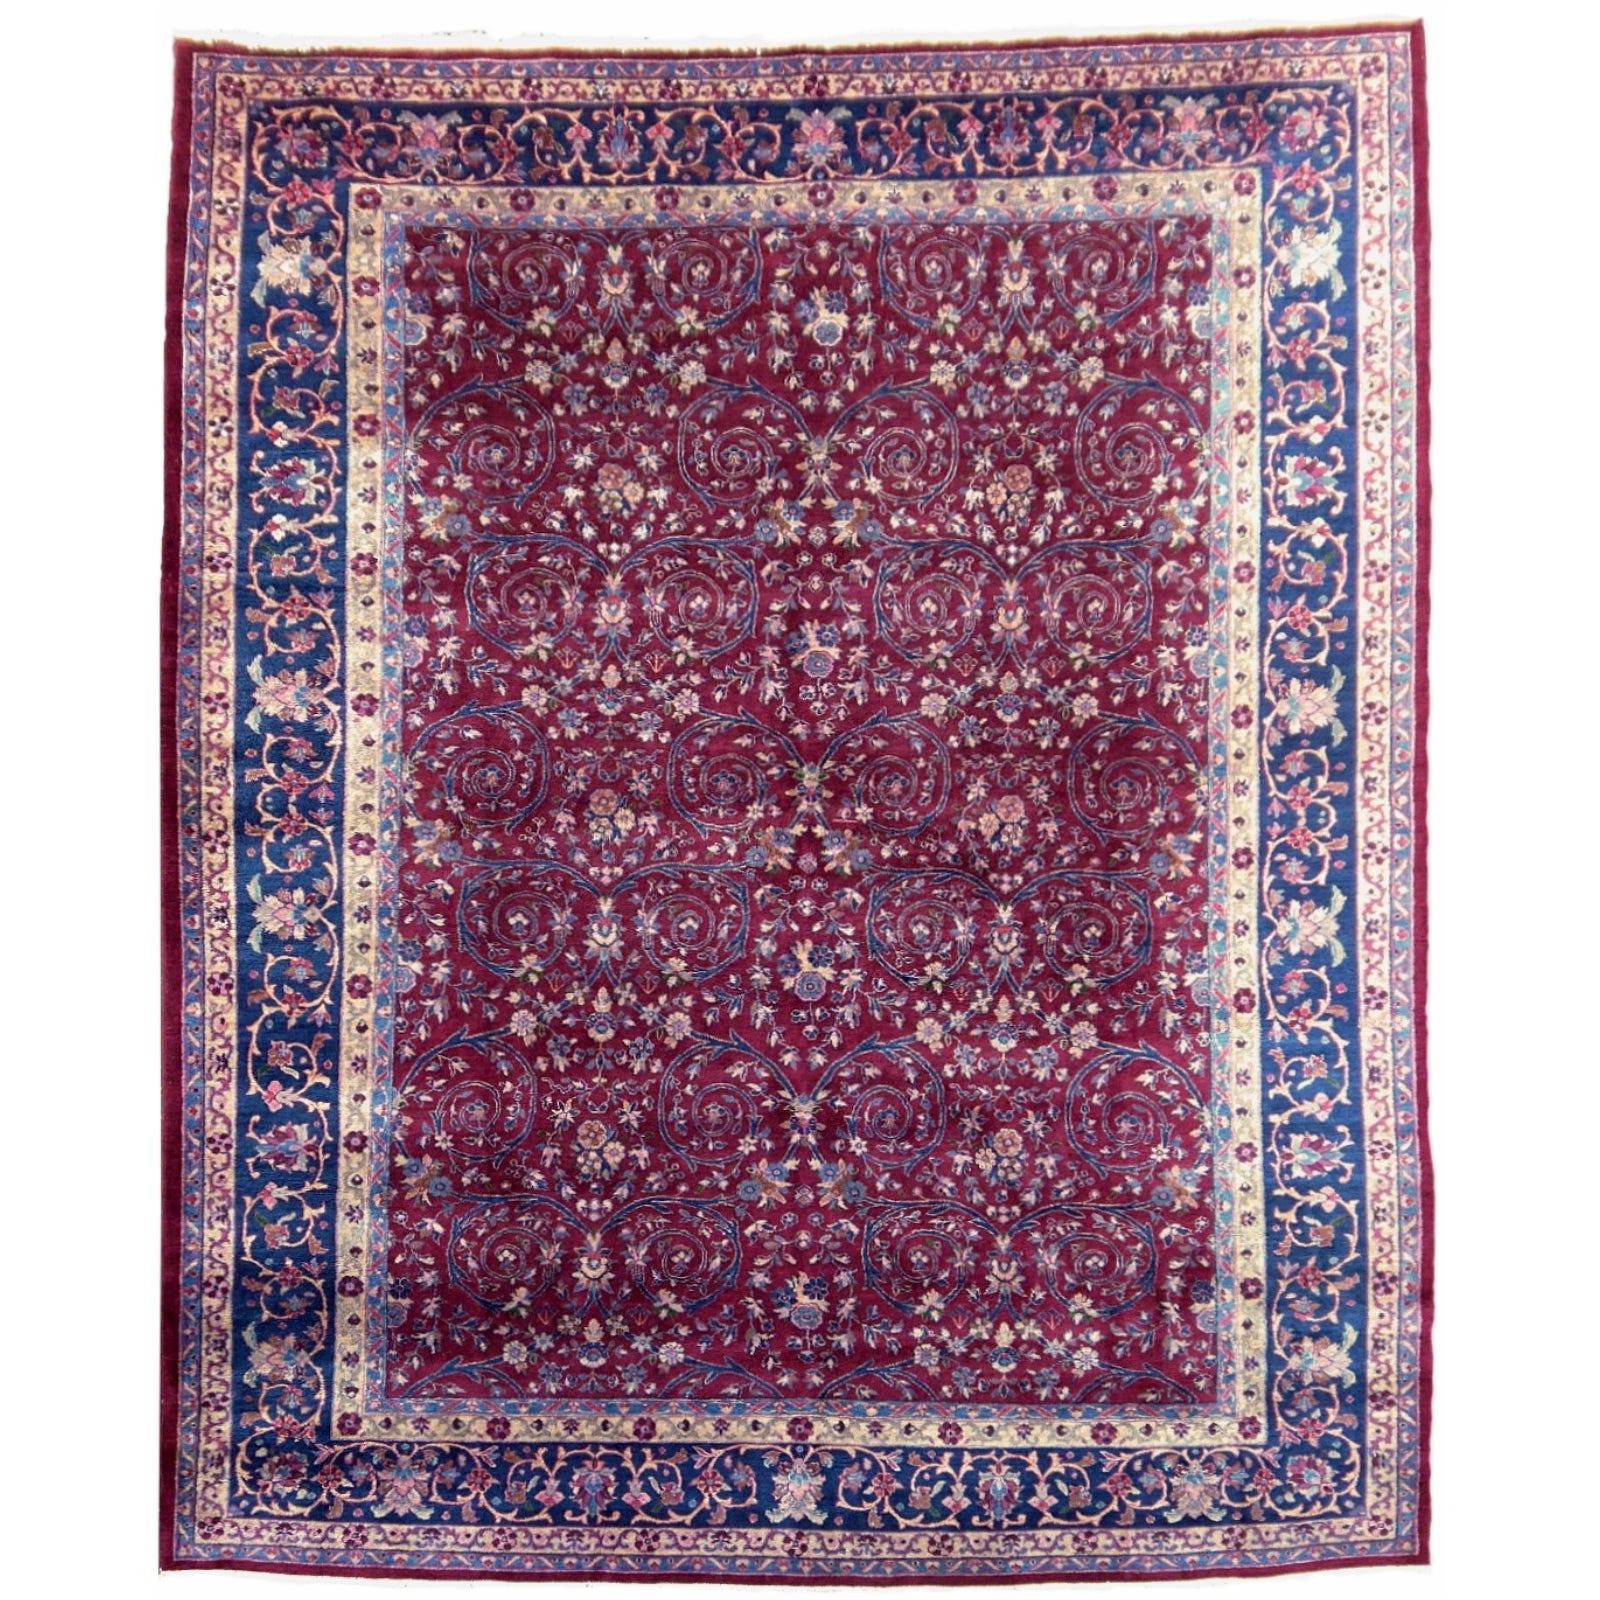 Agra Antiker Agra-Teppich in Violett, Beeren und Blau, Kollektion 12 x 9 ft Djoharian